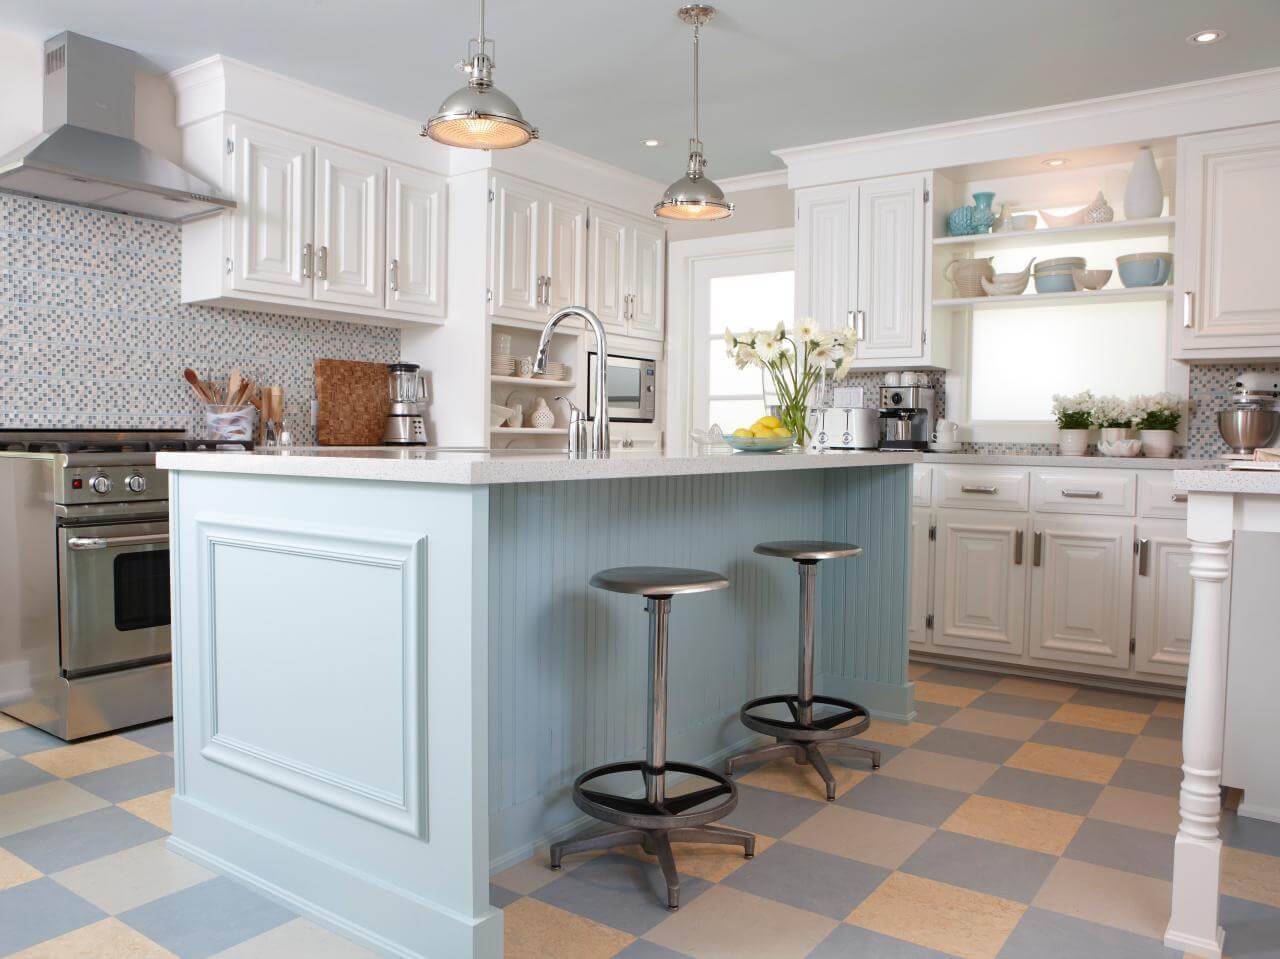 Phòng bếp đẹp sơn màu trắng tinh khôi cùng màu xanh pastel nhẹ nhàng kết hợp với sàn nhà kẻ ô vuông cam - xanh tạo nên sự giản dị mà đẹp mắt.